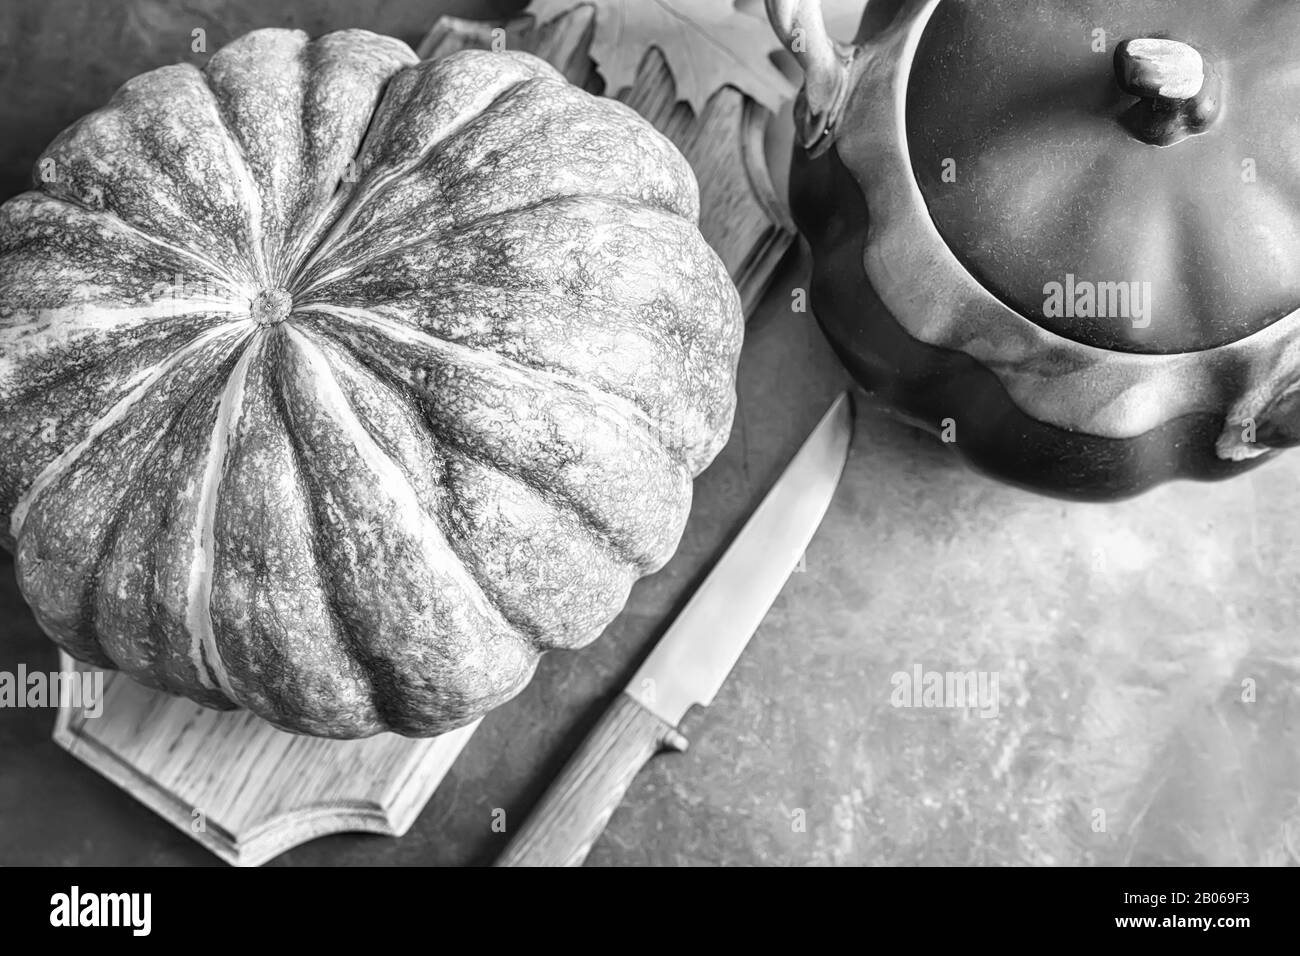 A large pumpkin next to a ceramic pot Stock Photo